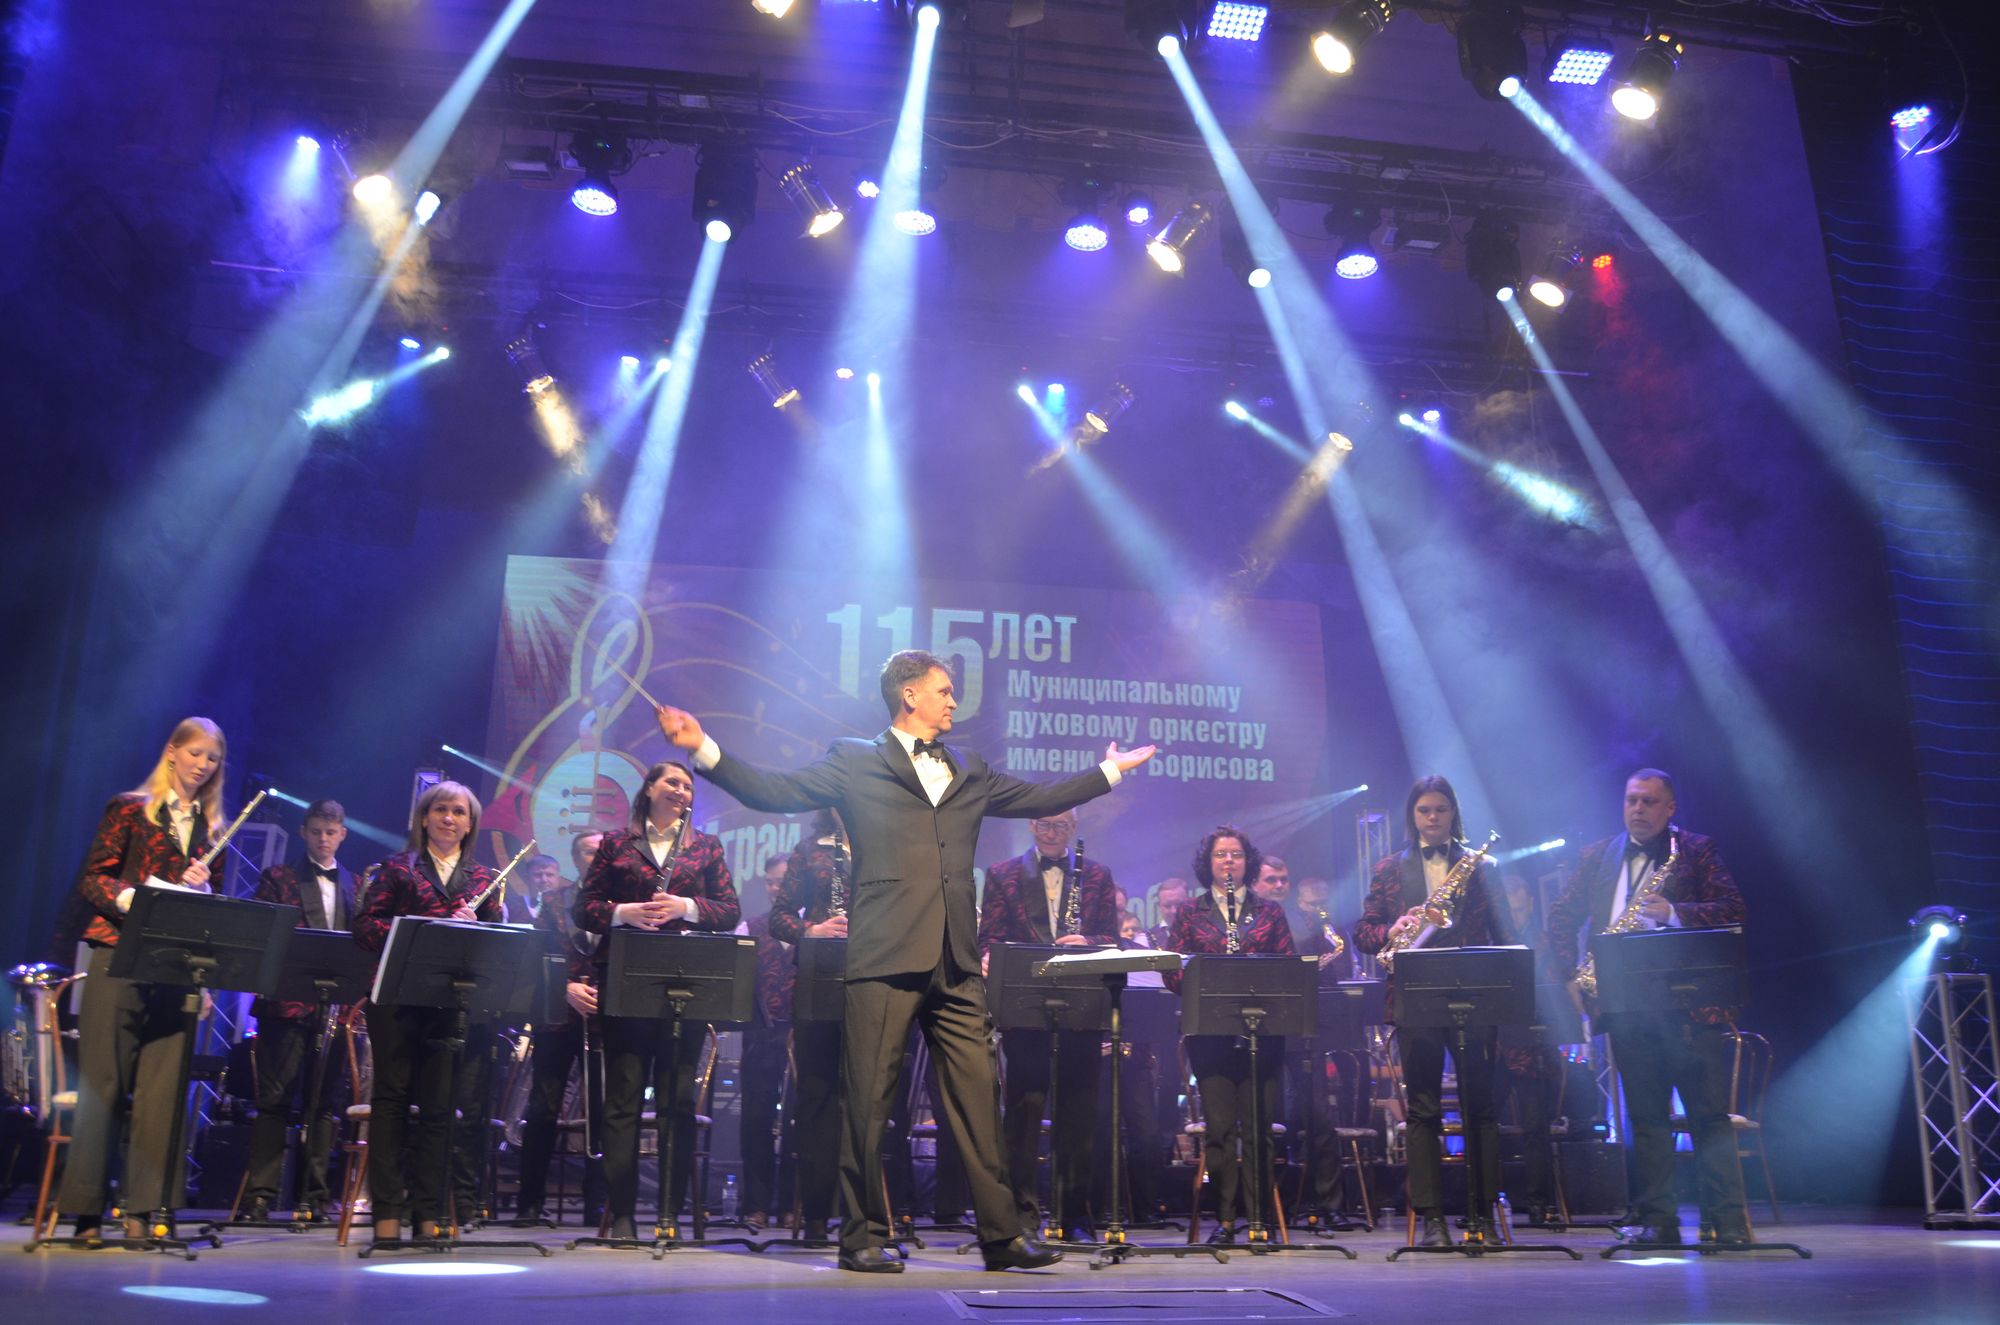 В Асбесте отметили 115-летие Муниципального духового оркестра имени М.М. Борисова